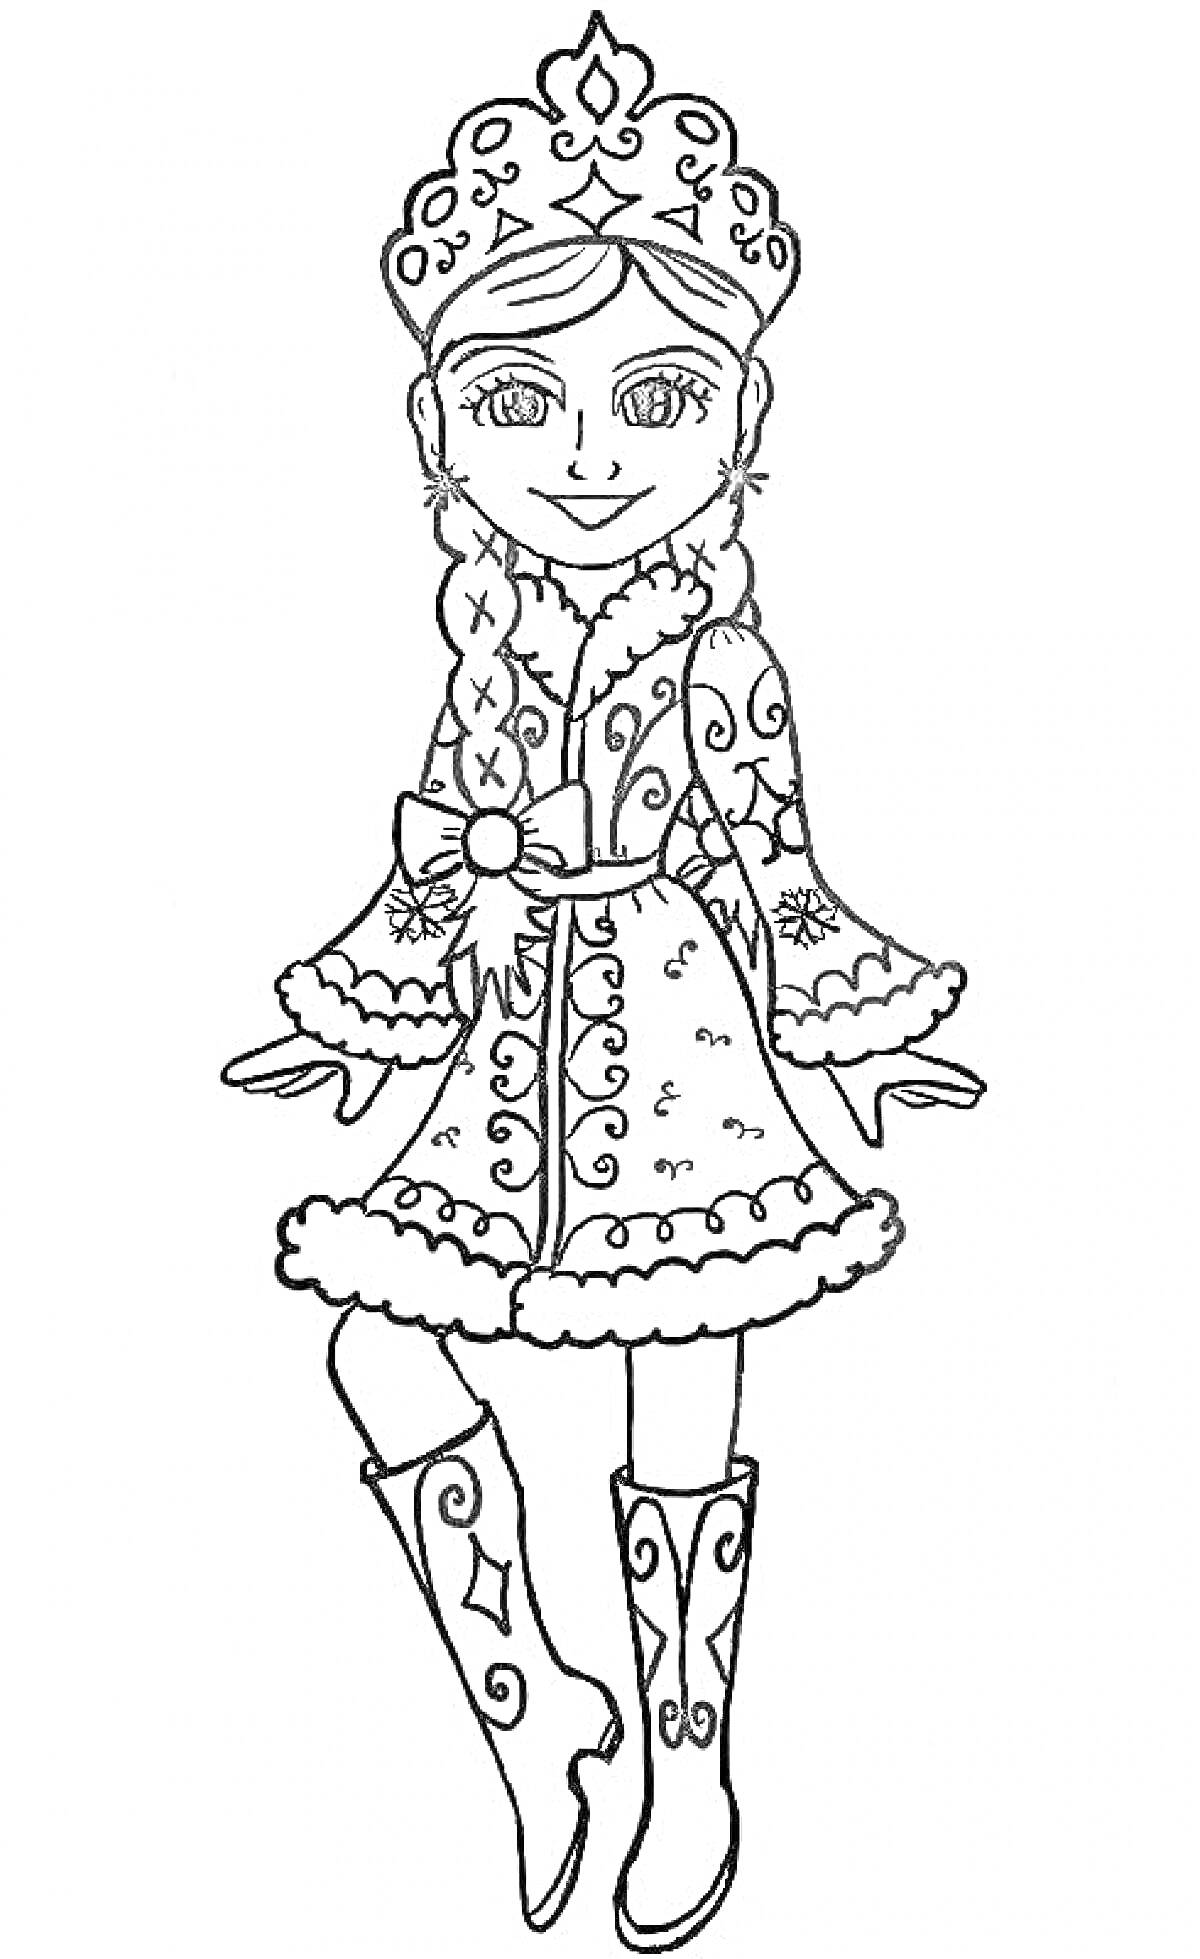 Девочка в новогоднем костюме с узорами, шубой, сапогами, кокошником и косой